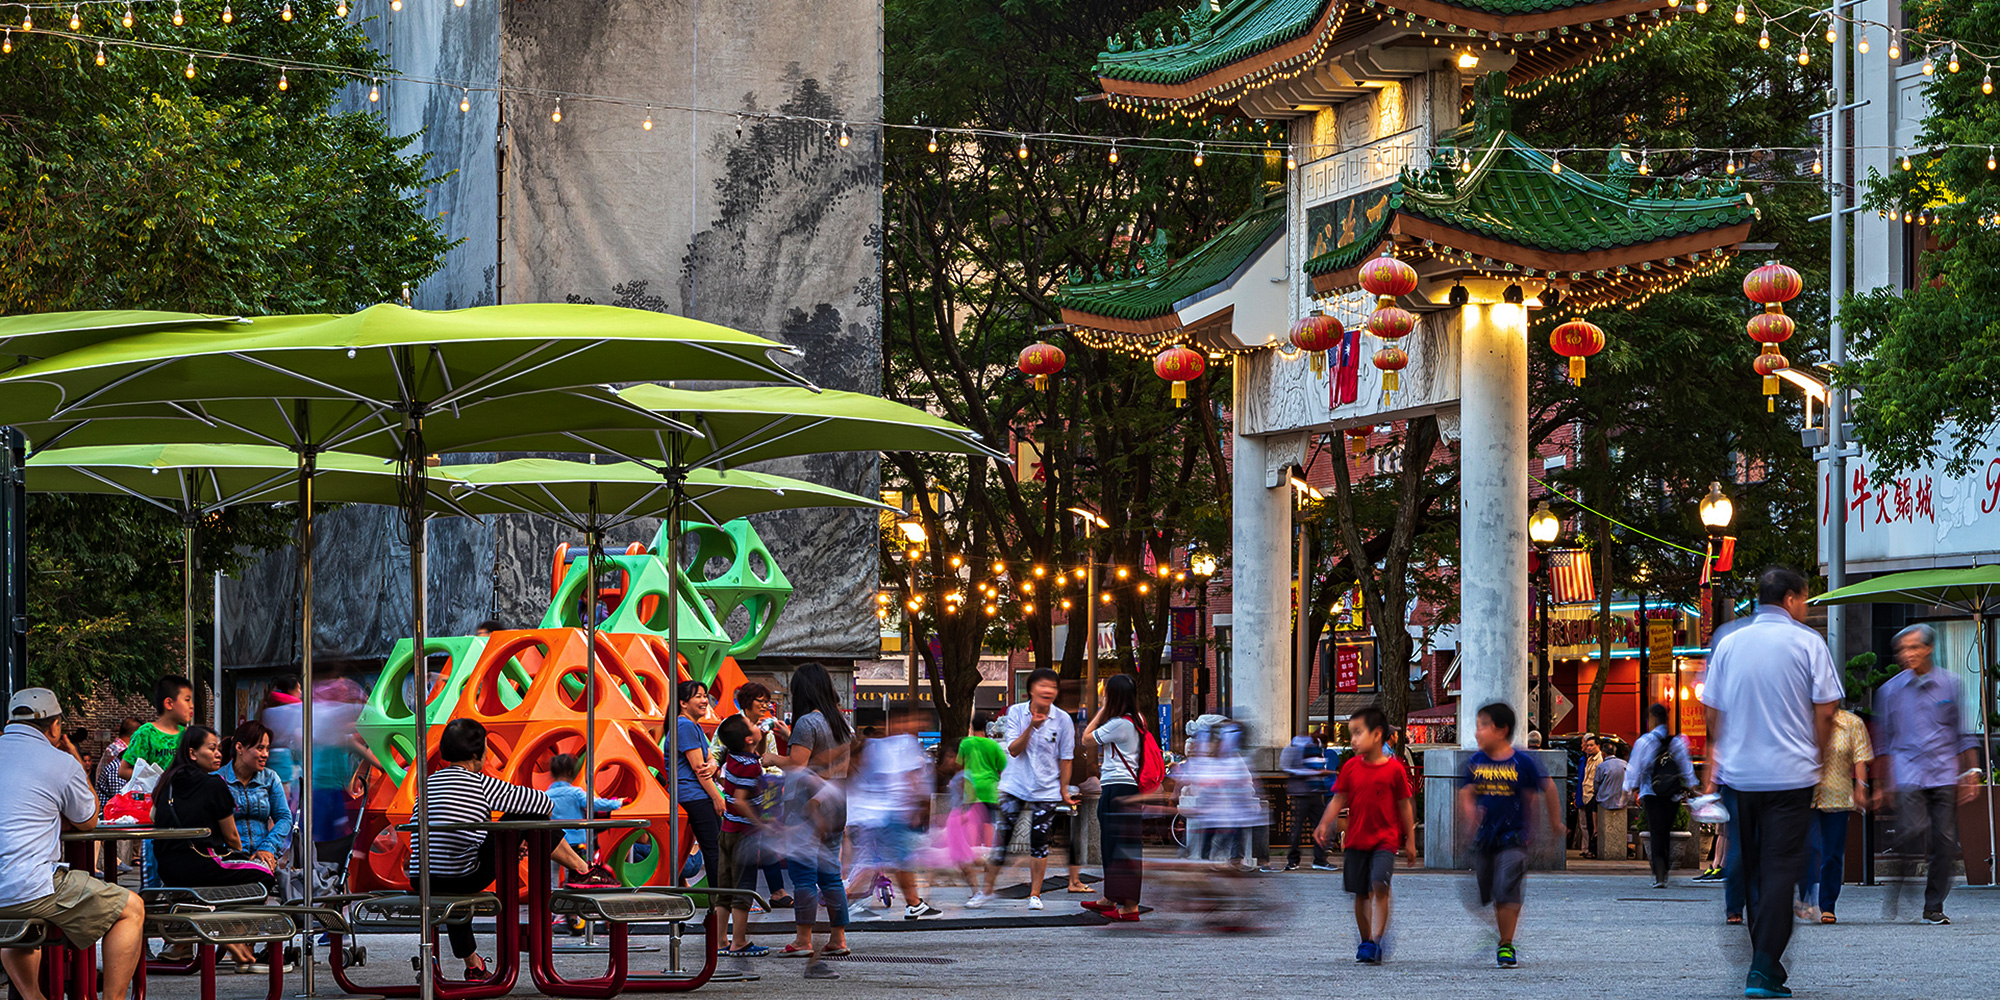 People walking through Chinatown park